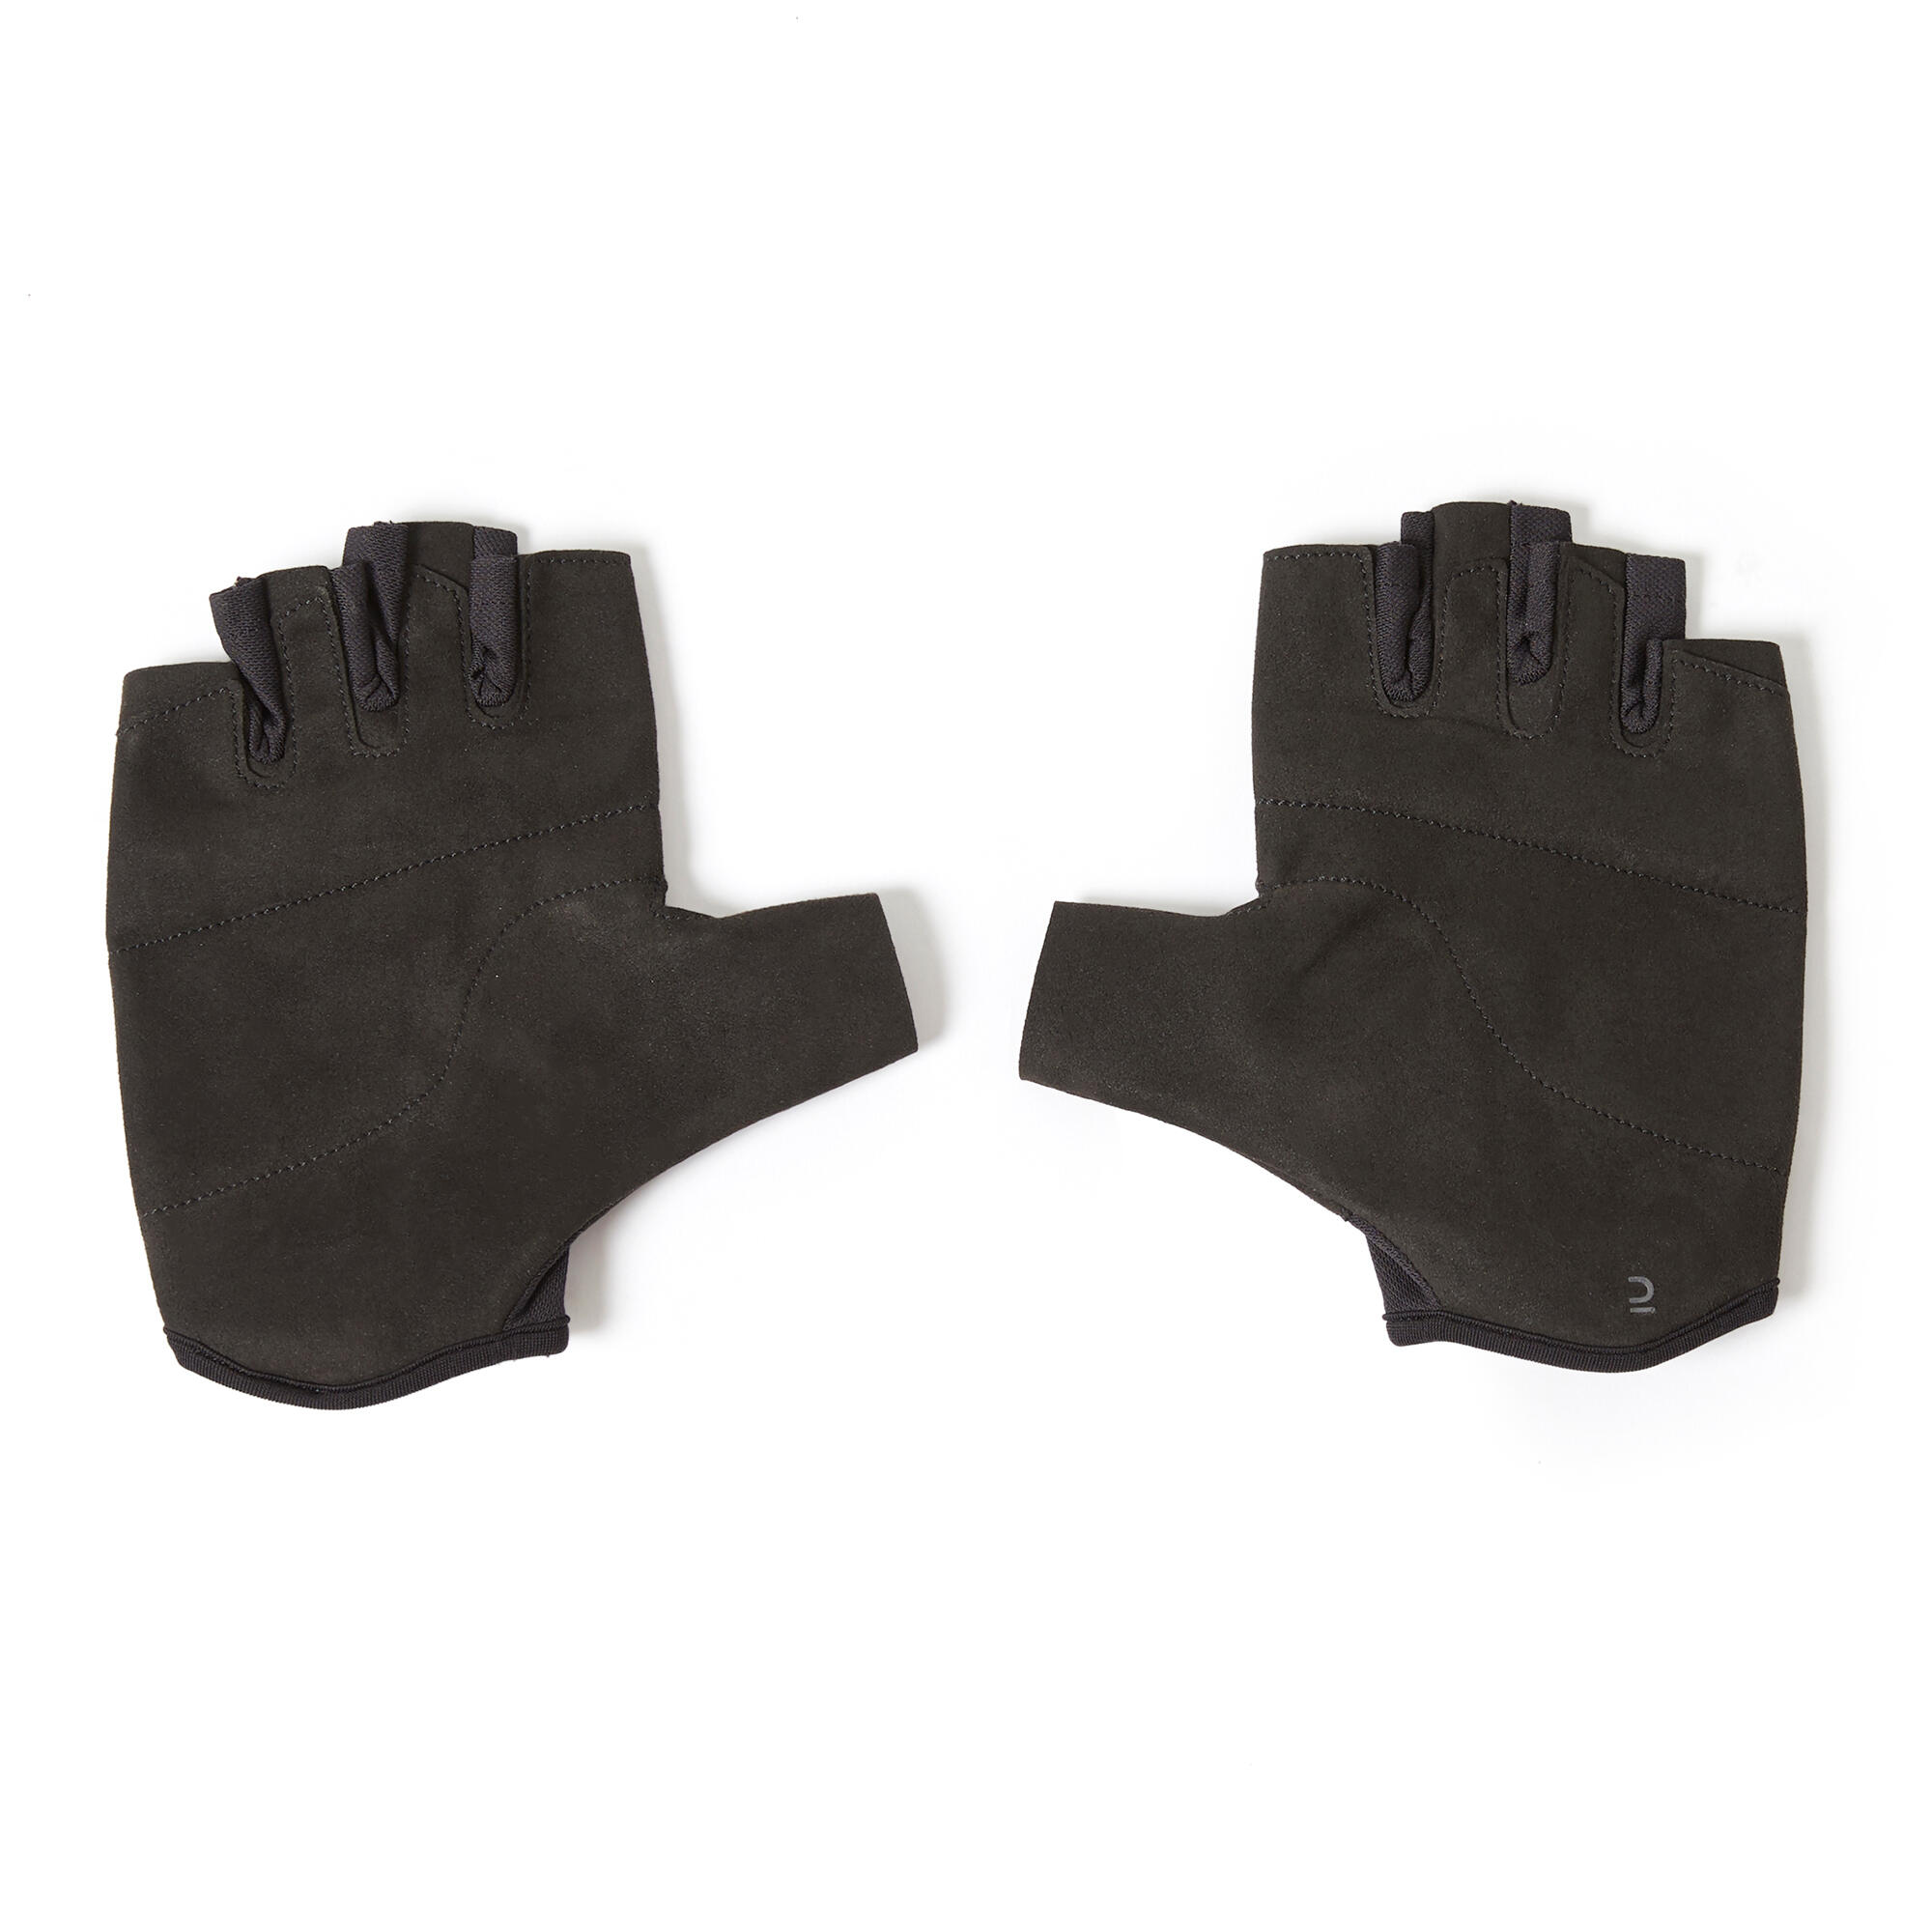 Weight Training Gloves - 100 Black